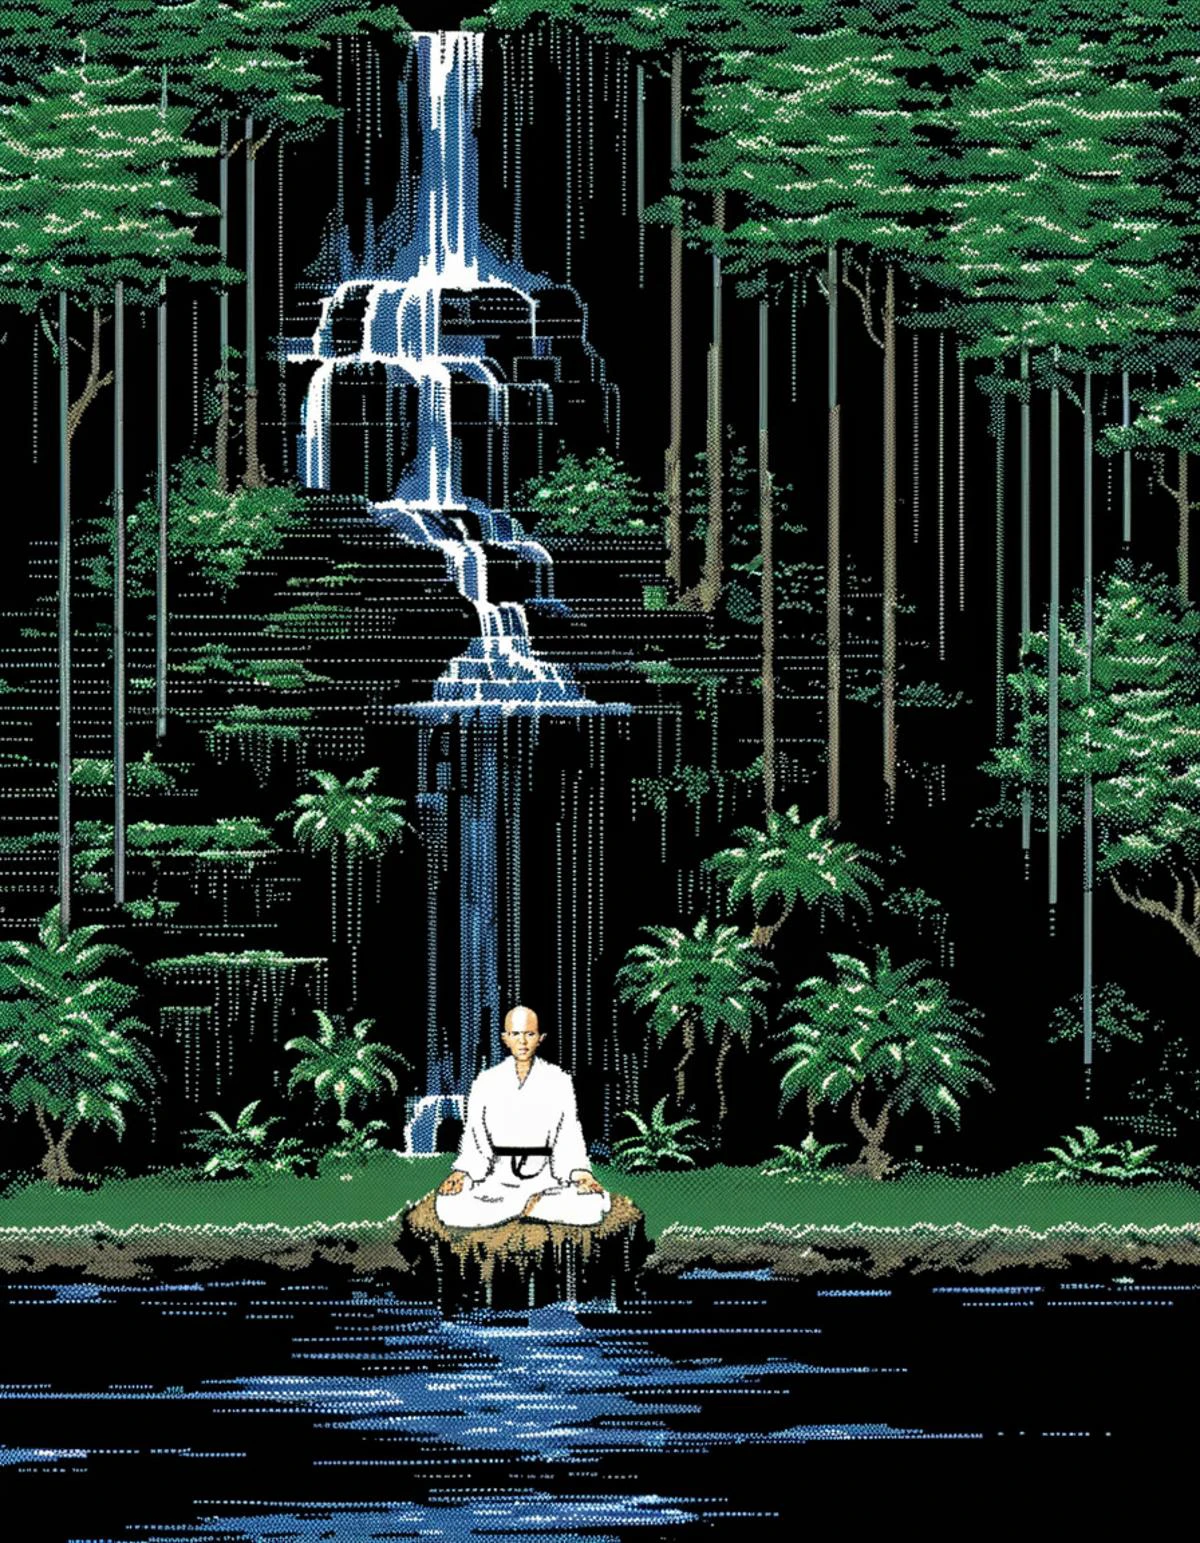 Imagen en píxeles de MacPaint de un monje meditando frente a una cascada, arte de pixel, mejor calidad, años 80, minimalista, 